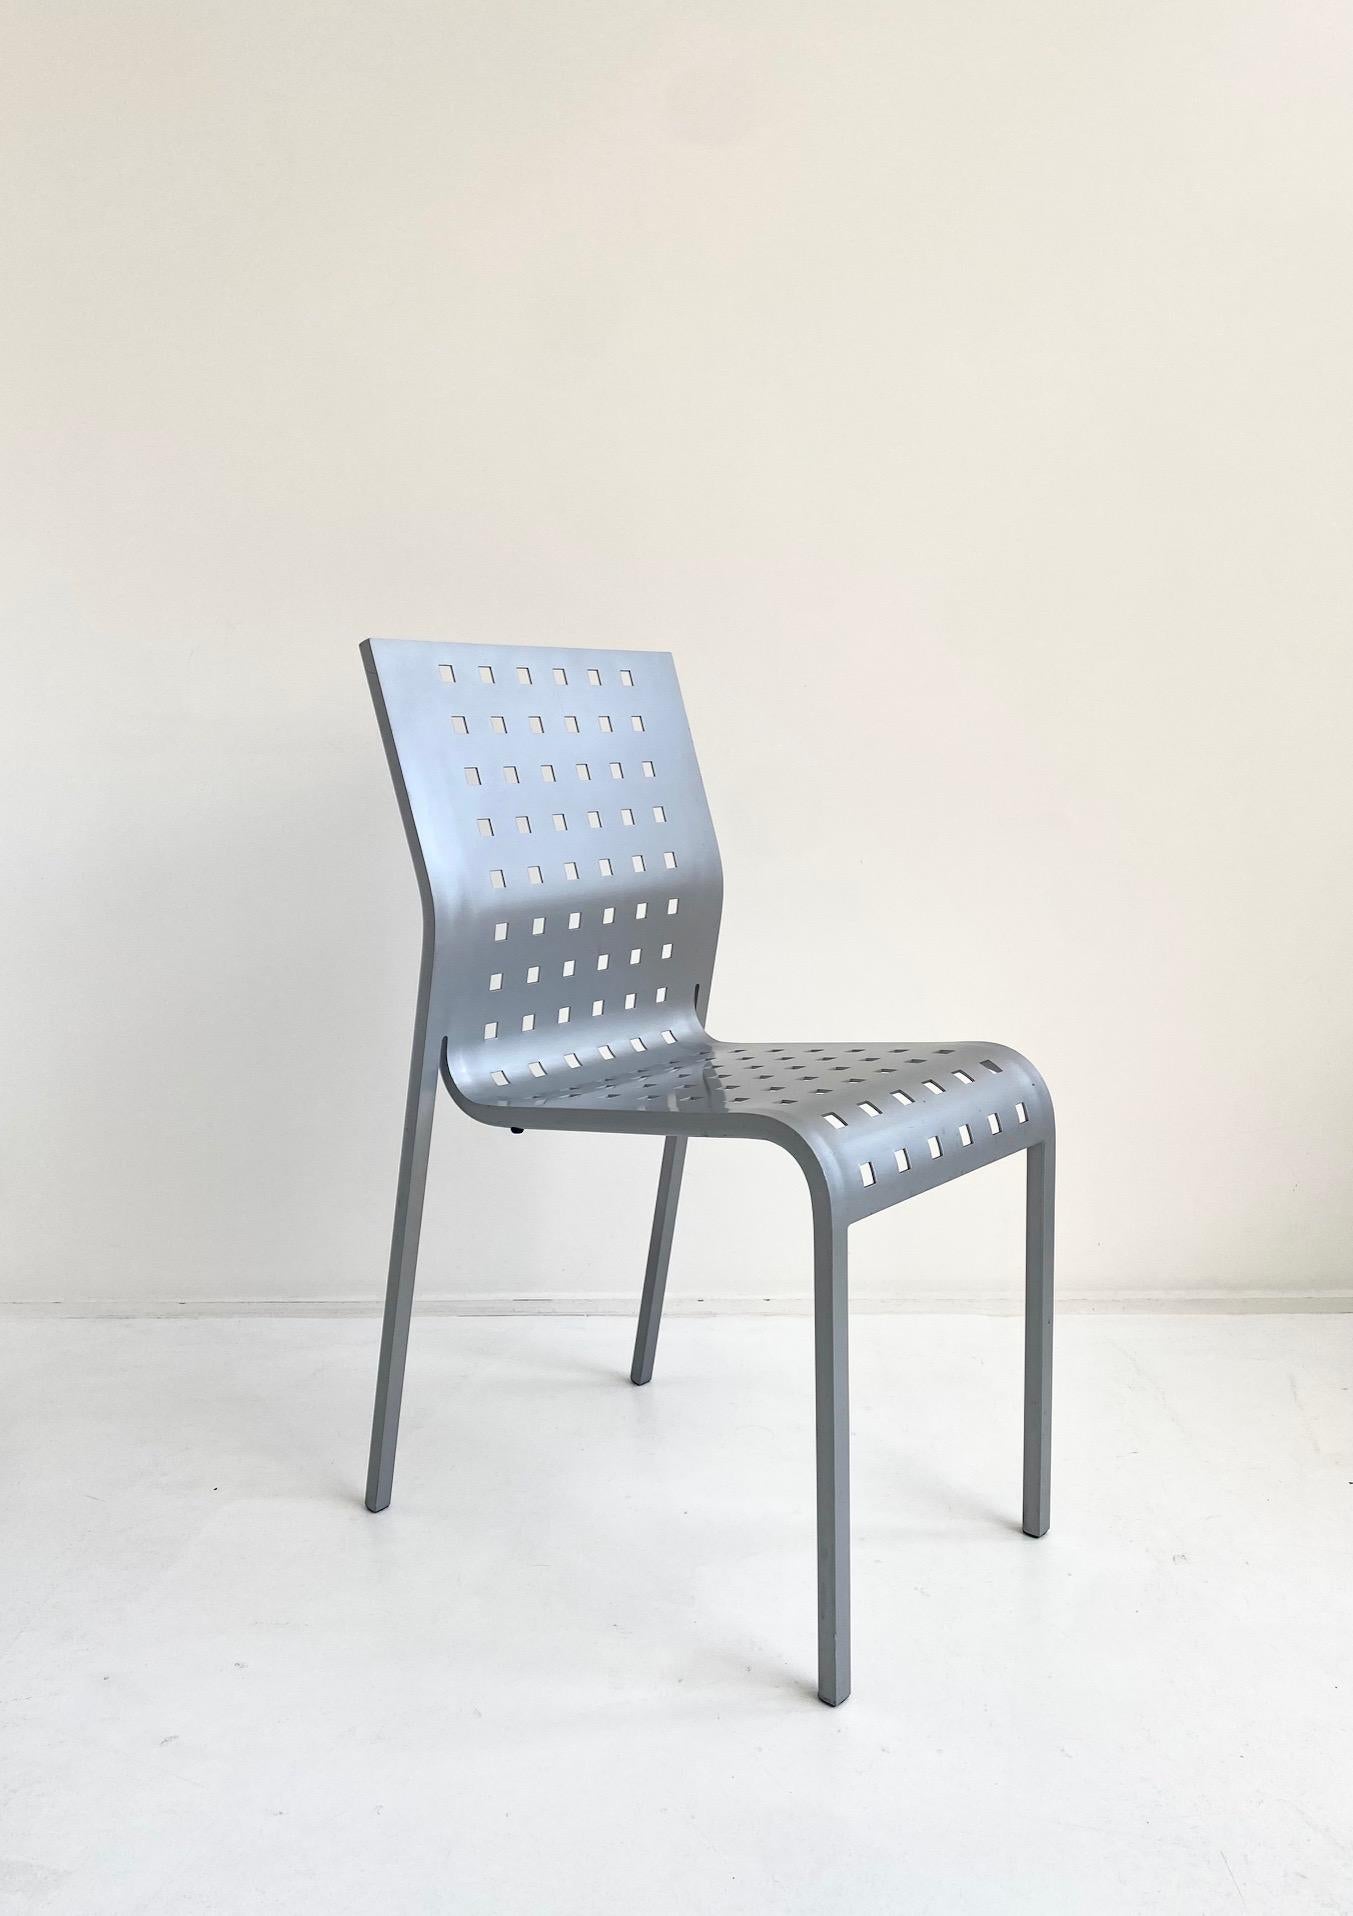 Juego de 4 sillas Mirandolina nº 2068 de Pietro Arosio, Italia, hacia 1993
El asiento está formado por una sola pieza de aluminio curvado
Muy cómodo
Buen estado vintage, con sólo pequeños signos de uso.